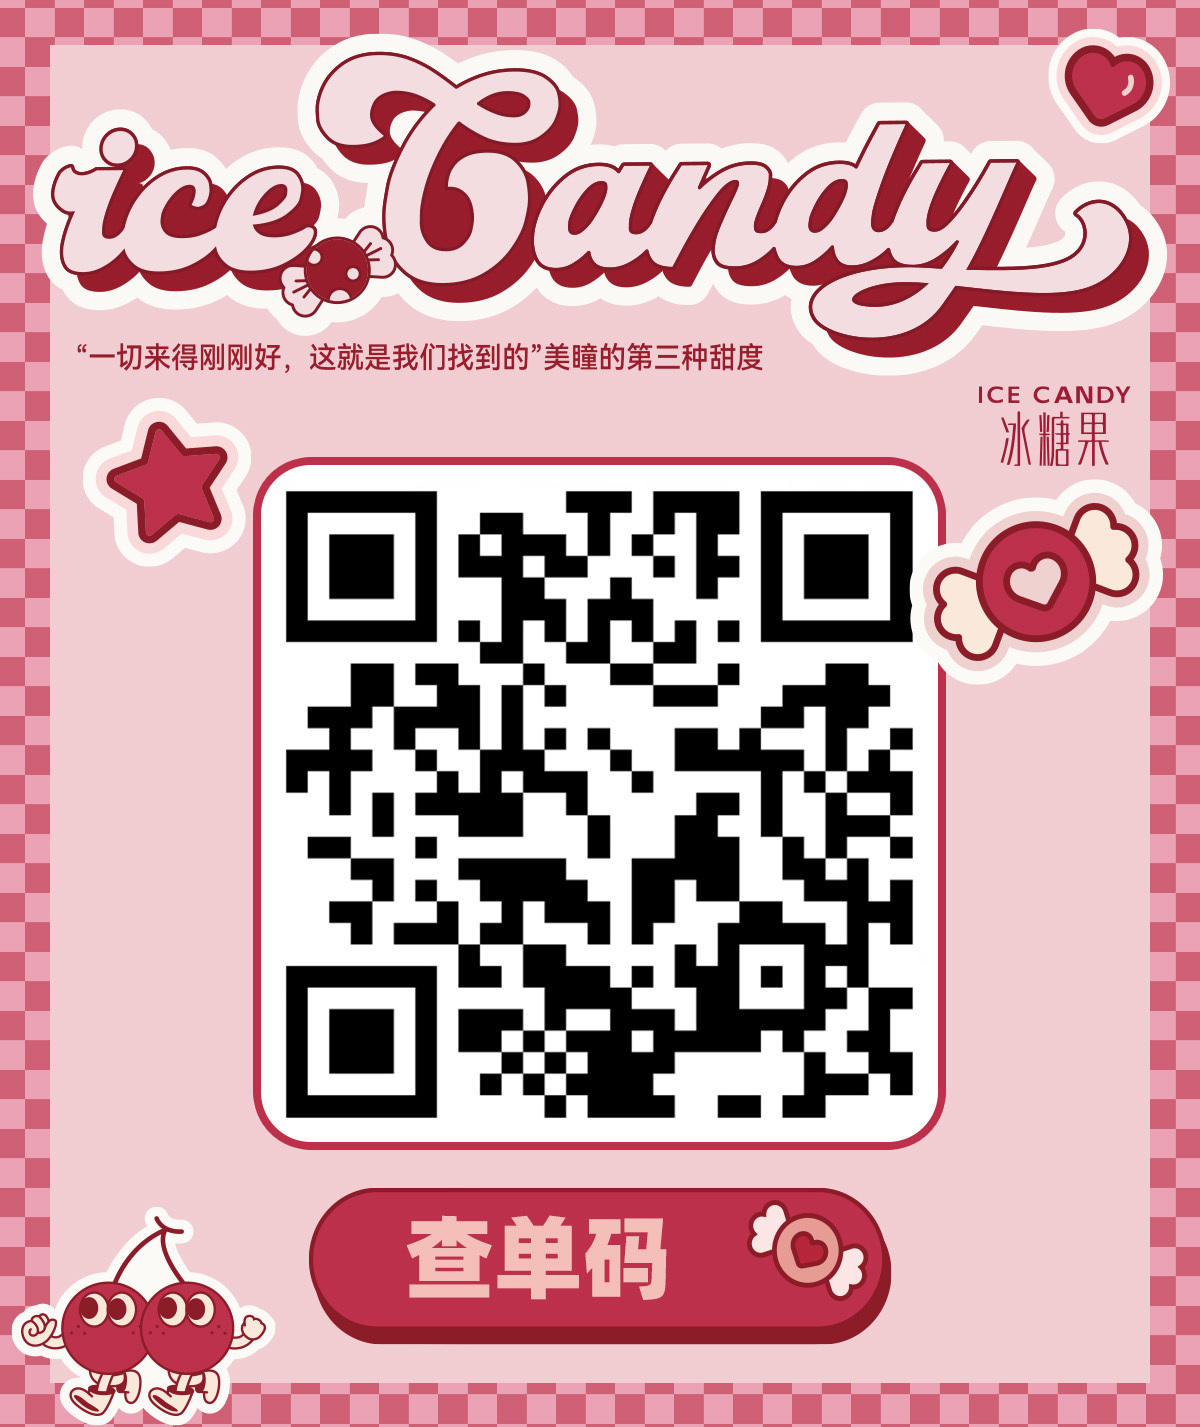 【年抛】Icecandy 日常活动 - VVCON美瞳网